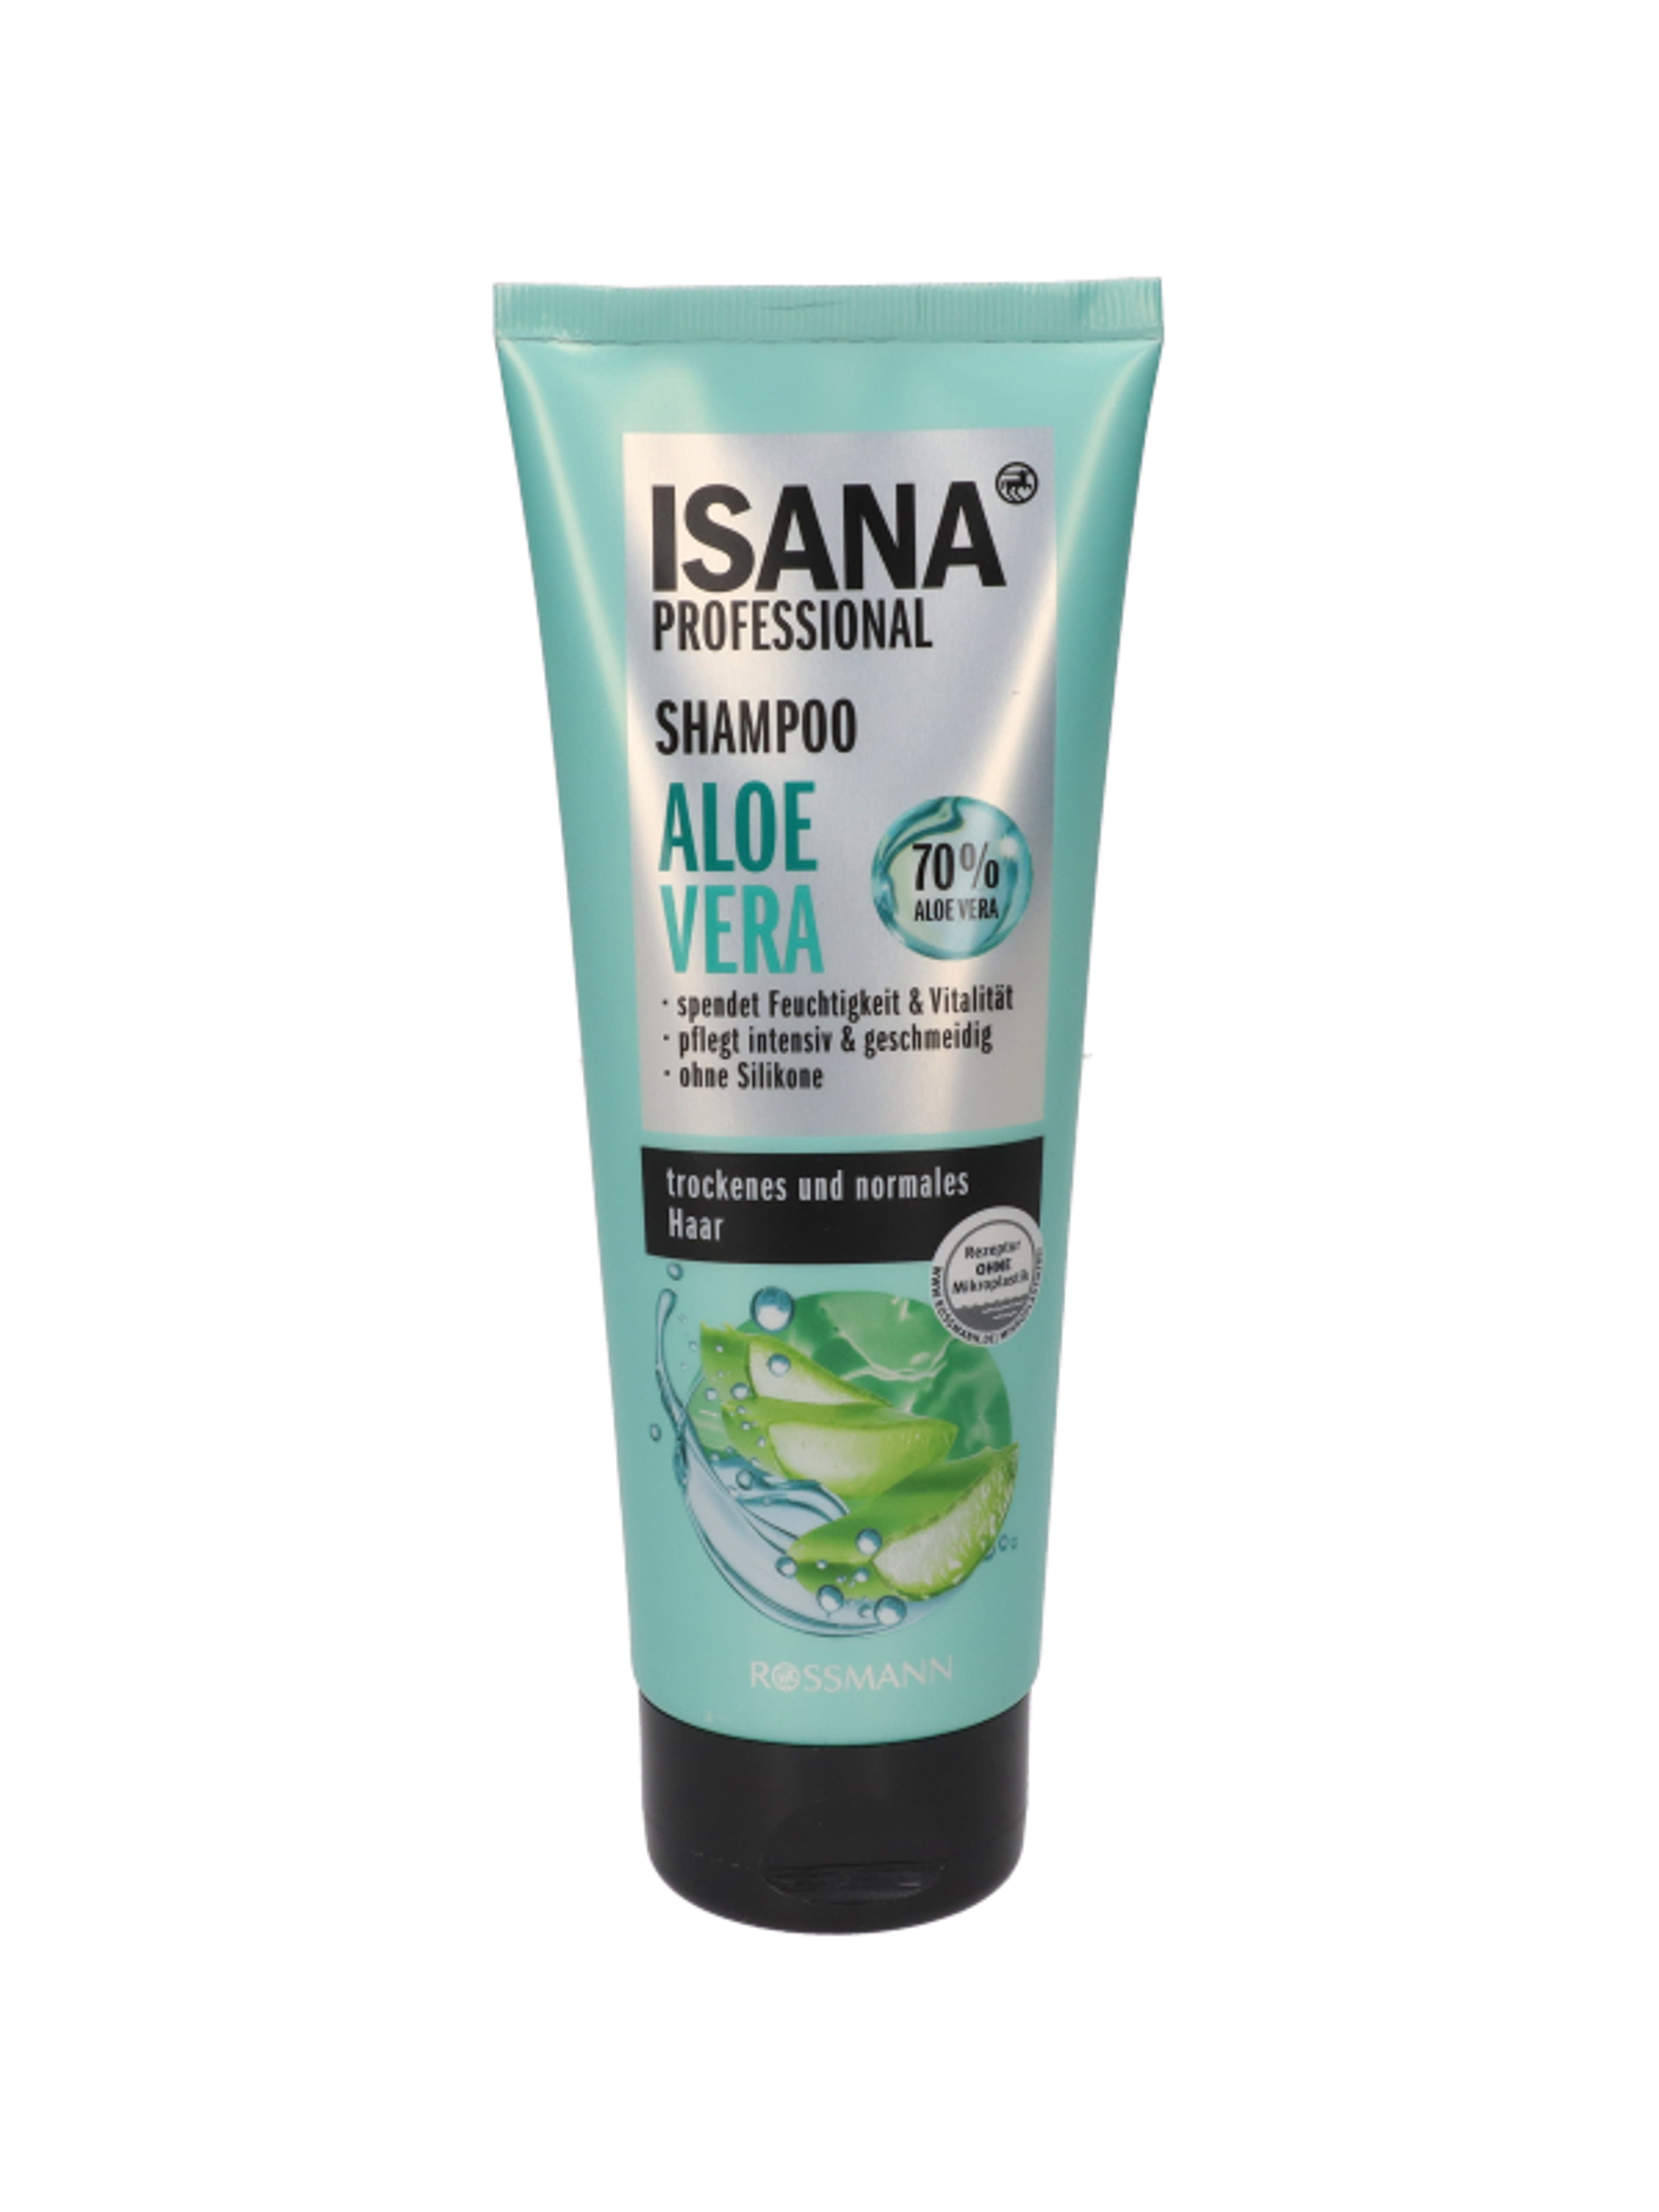 Isana Professional Aloe Vera sampon - 250 ml-1